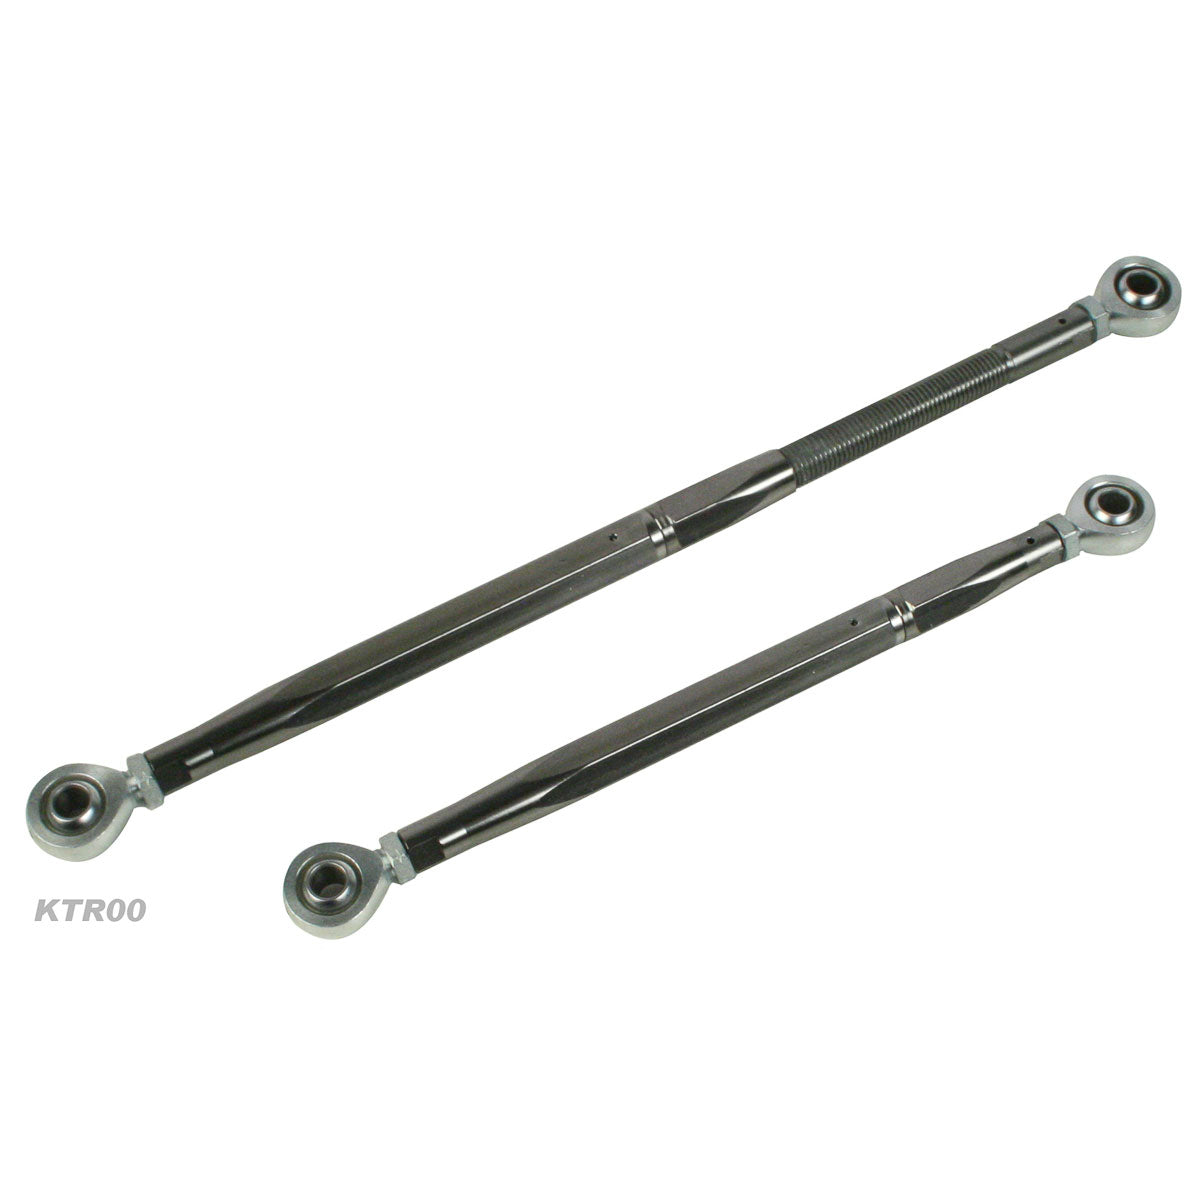 Kartech Tie Rod Adjustable Complete 190-280mm